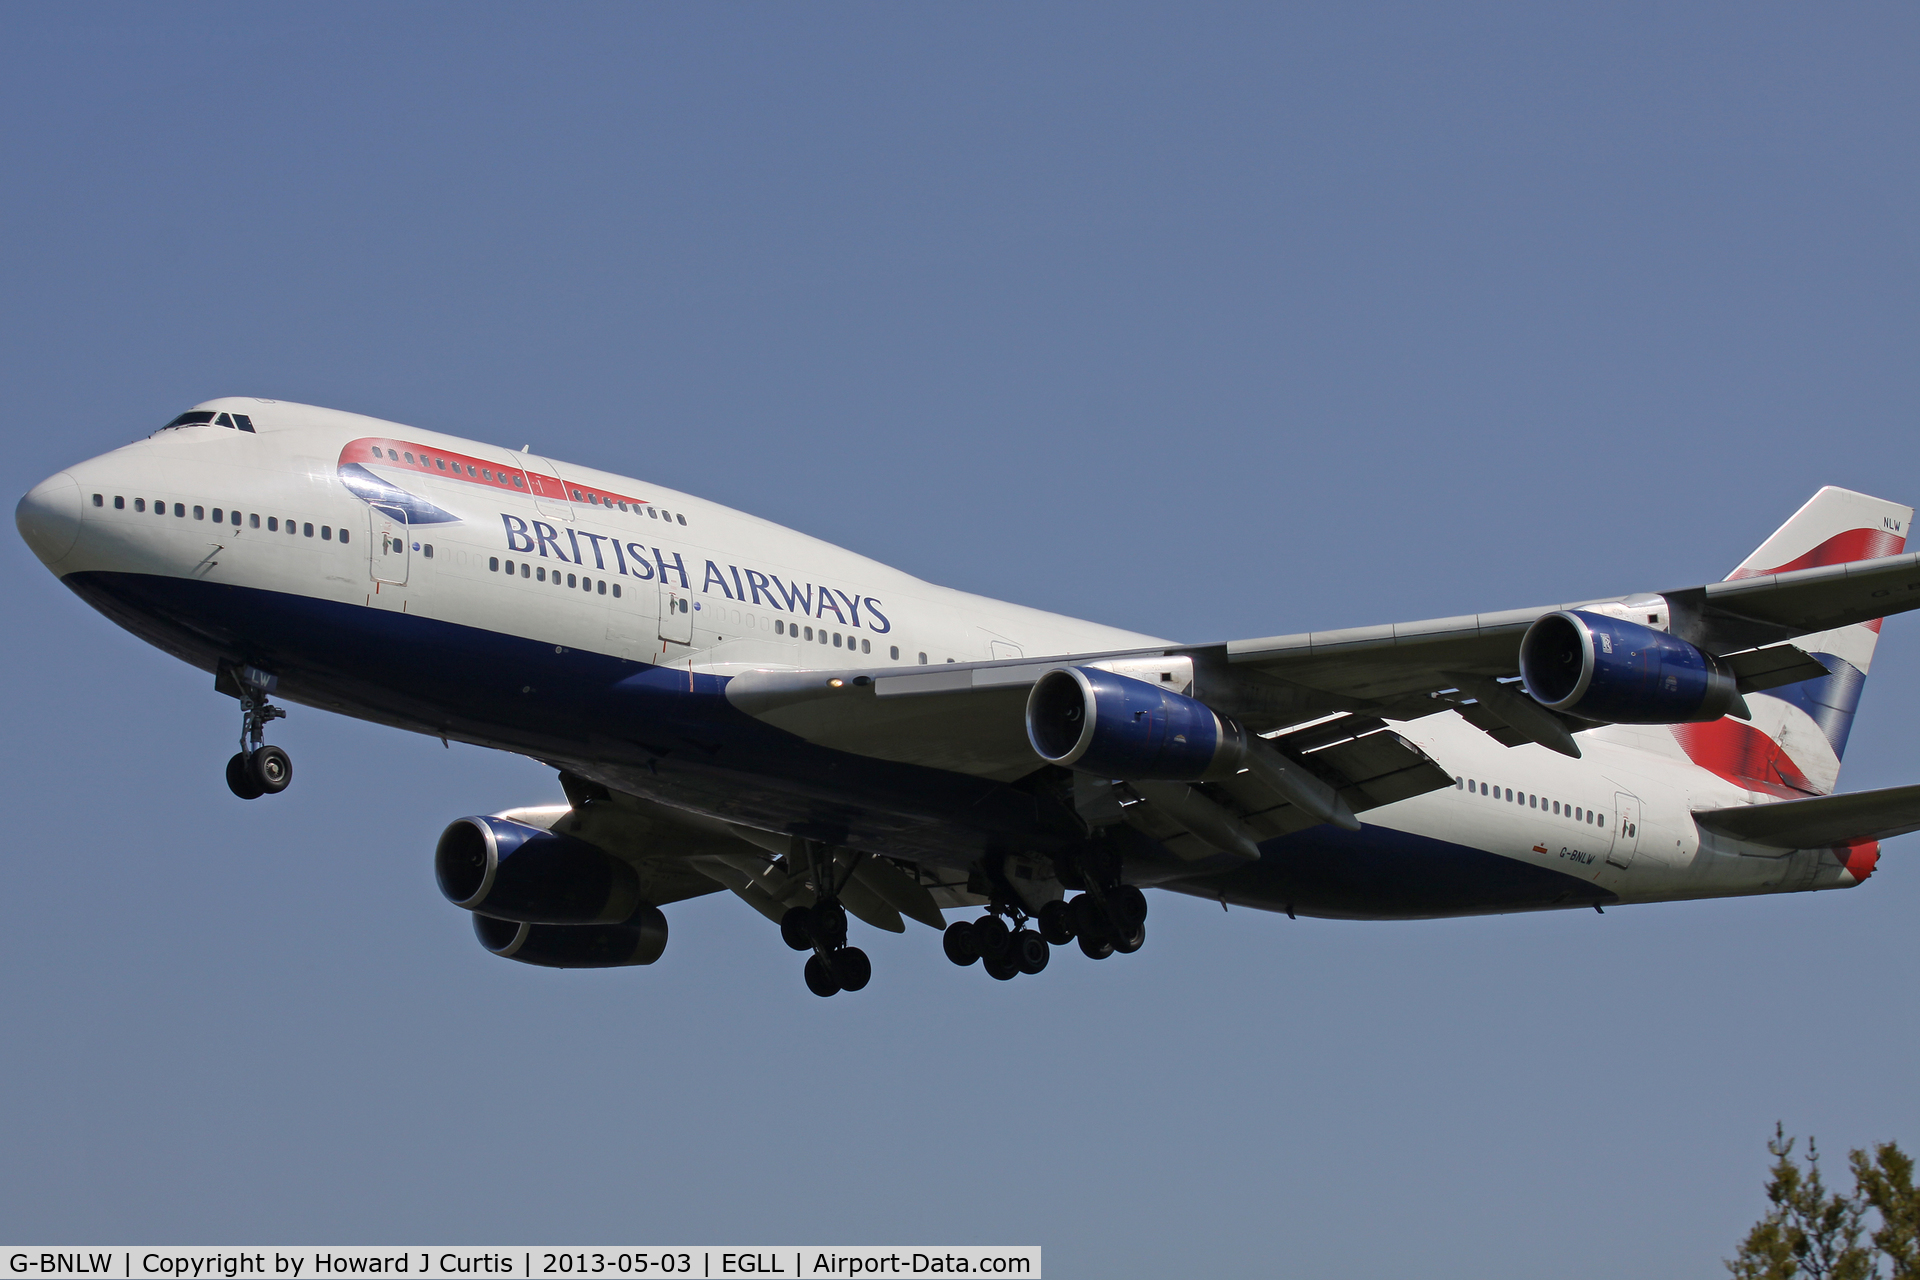 G-BNLW, 1992 Boeing 747-436 C/N 25432, British Airways, on approach to runway 27L.